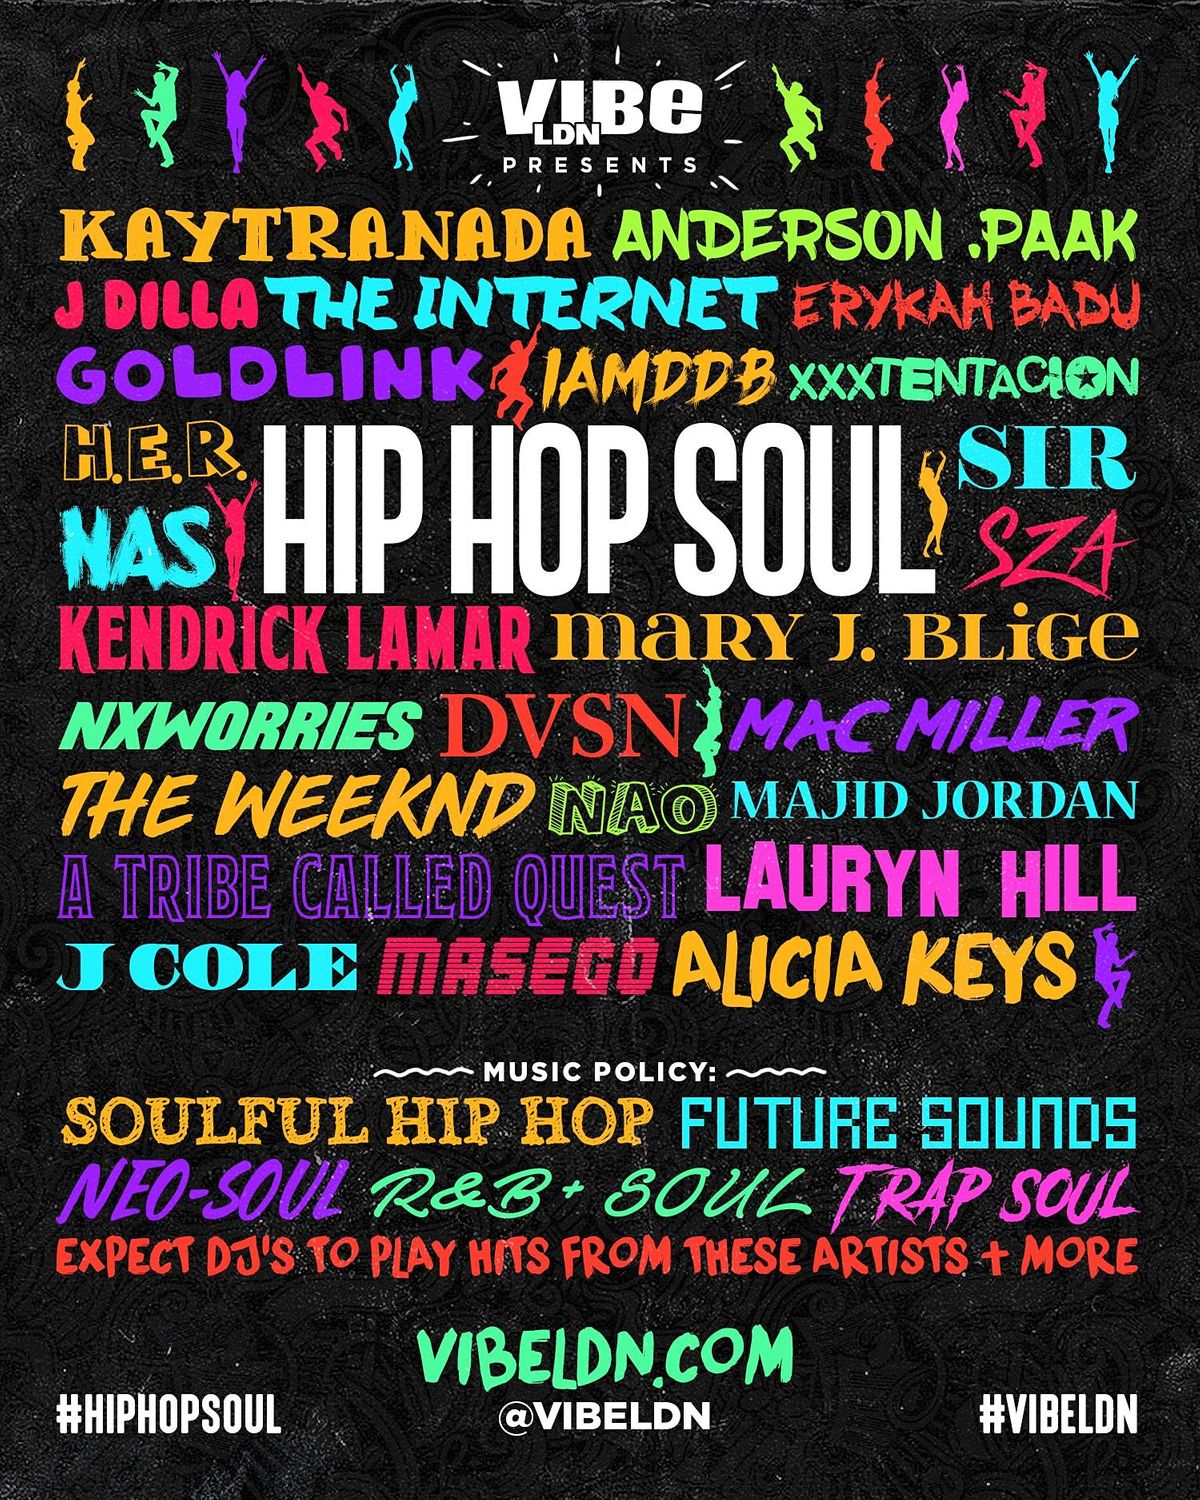 hip hop SOUL | (alt. hip hop, neo soul, rnb)